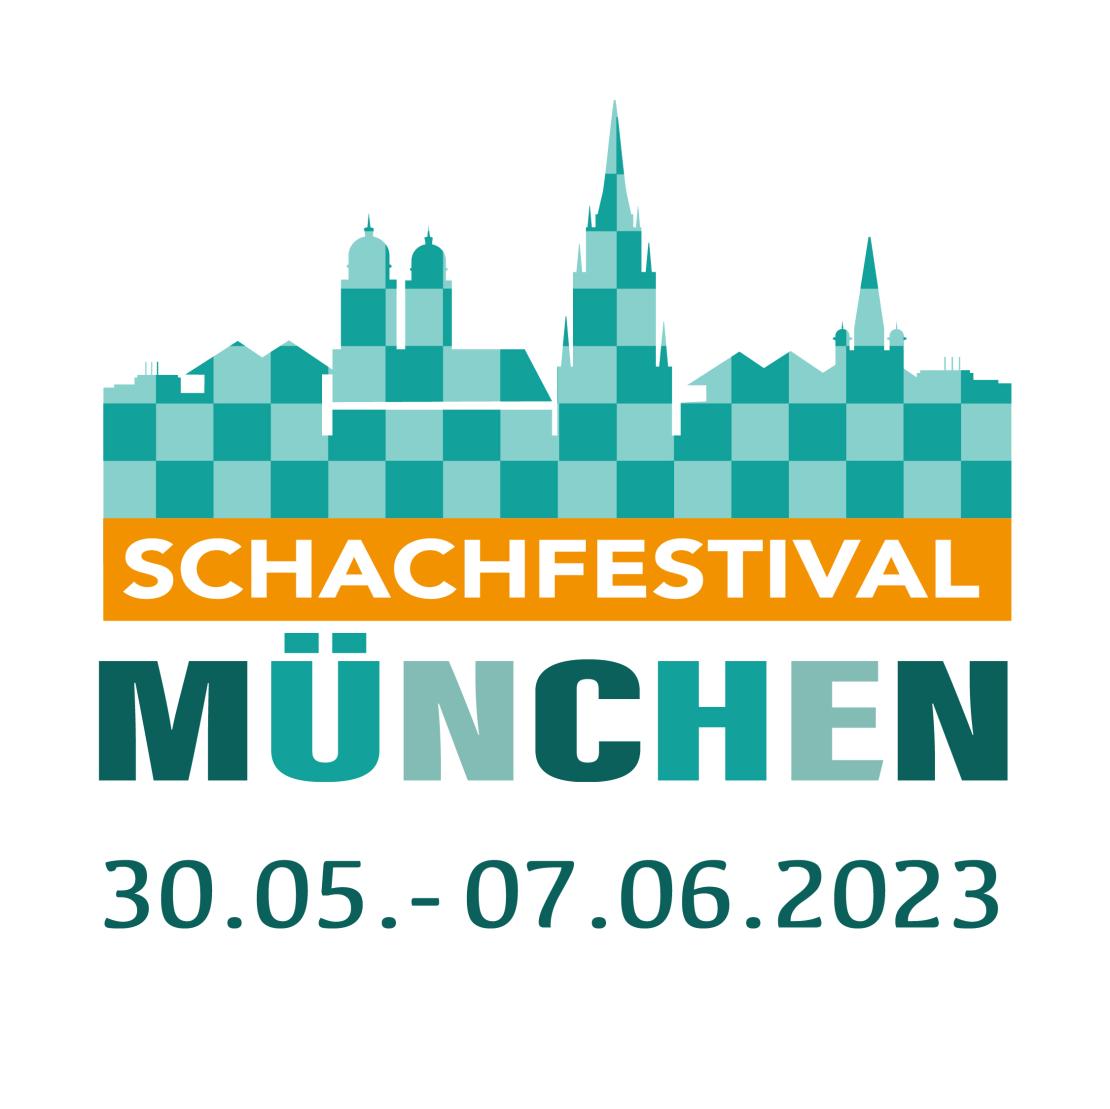 Schachfestival München